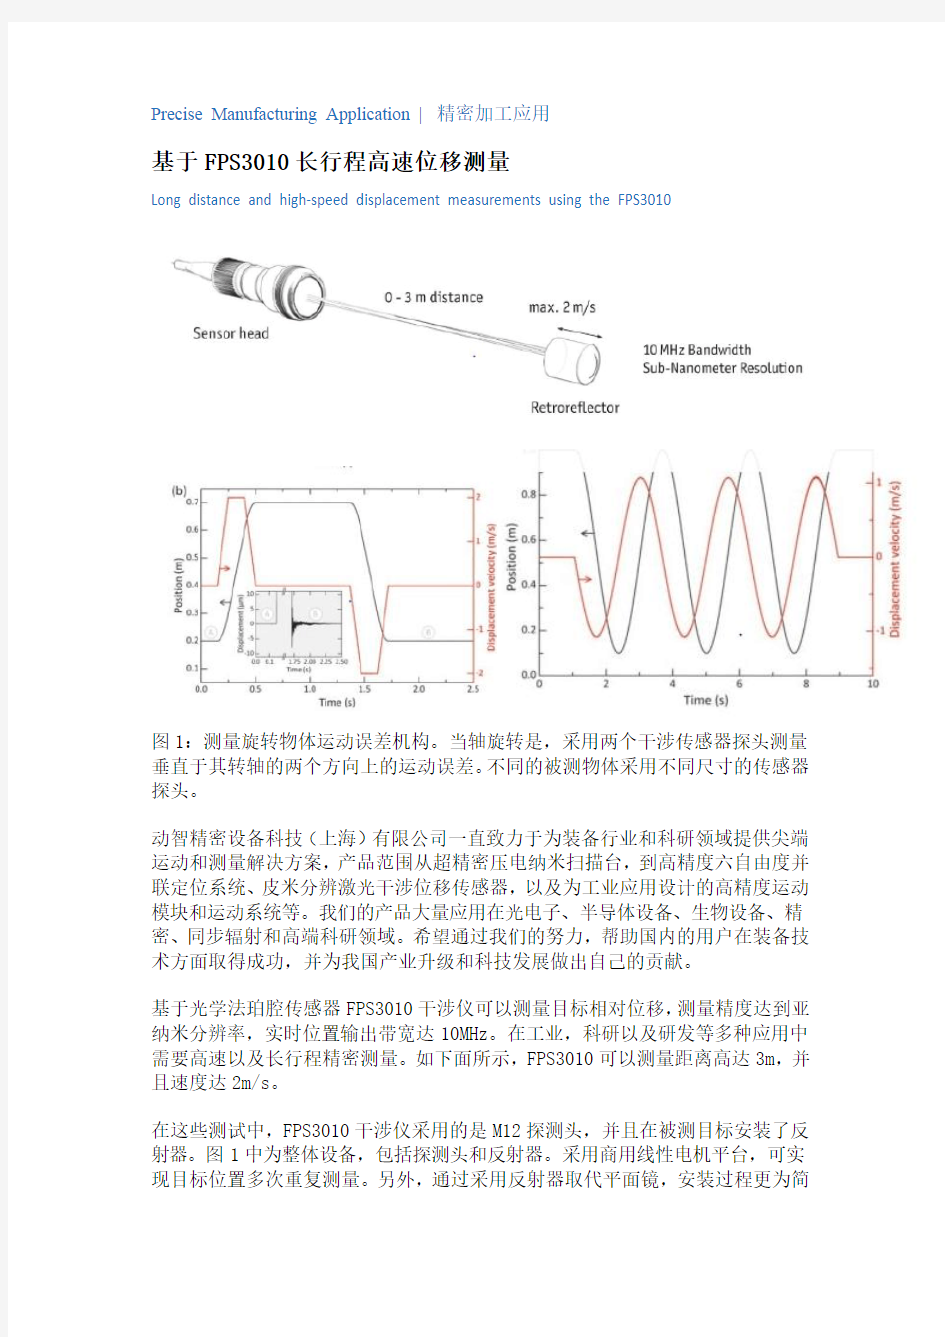 激光干涉仪应用原理(五)——长行程高速位移测量